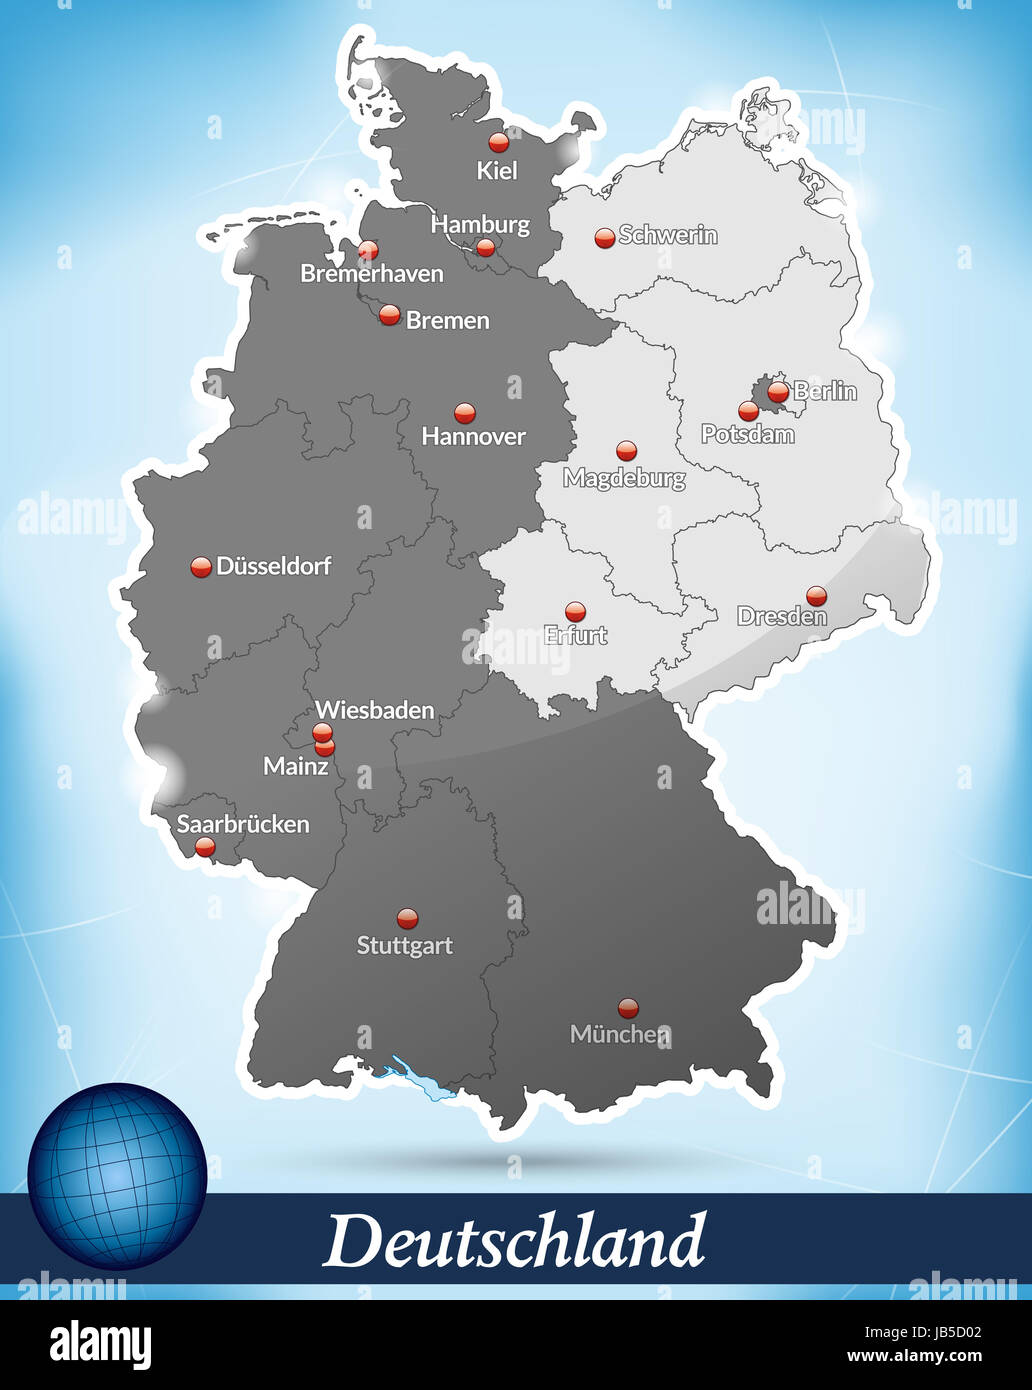 Deutschland Mit Unterteilung Ost/West als Inselkarte in Blau. Sterben Sie  Karte Kann Sofort Für Ihr Vorhaben Eingesetzt Werden Stockfotografie - Alamy